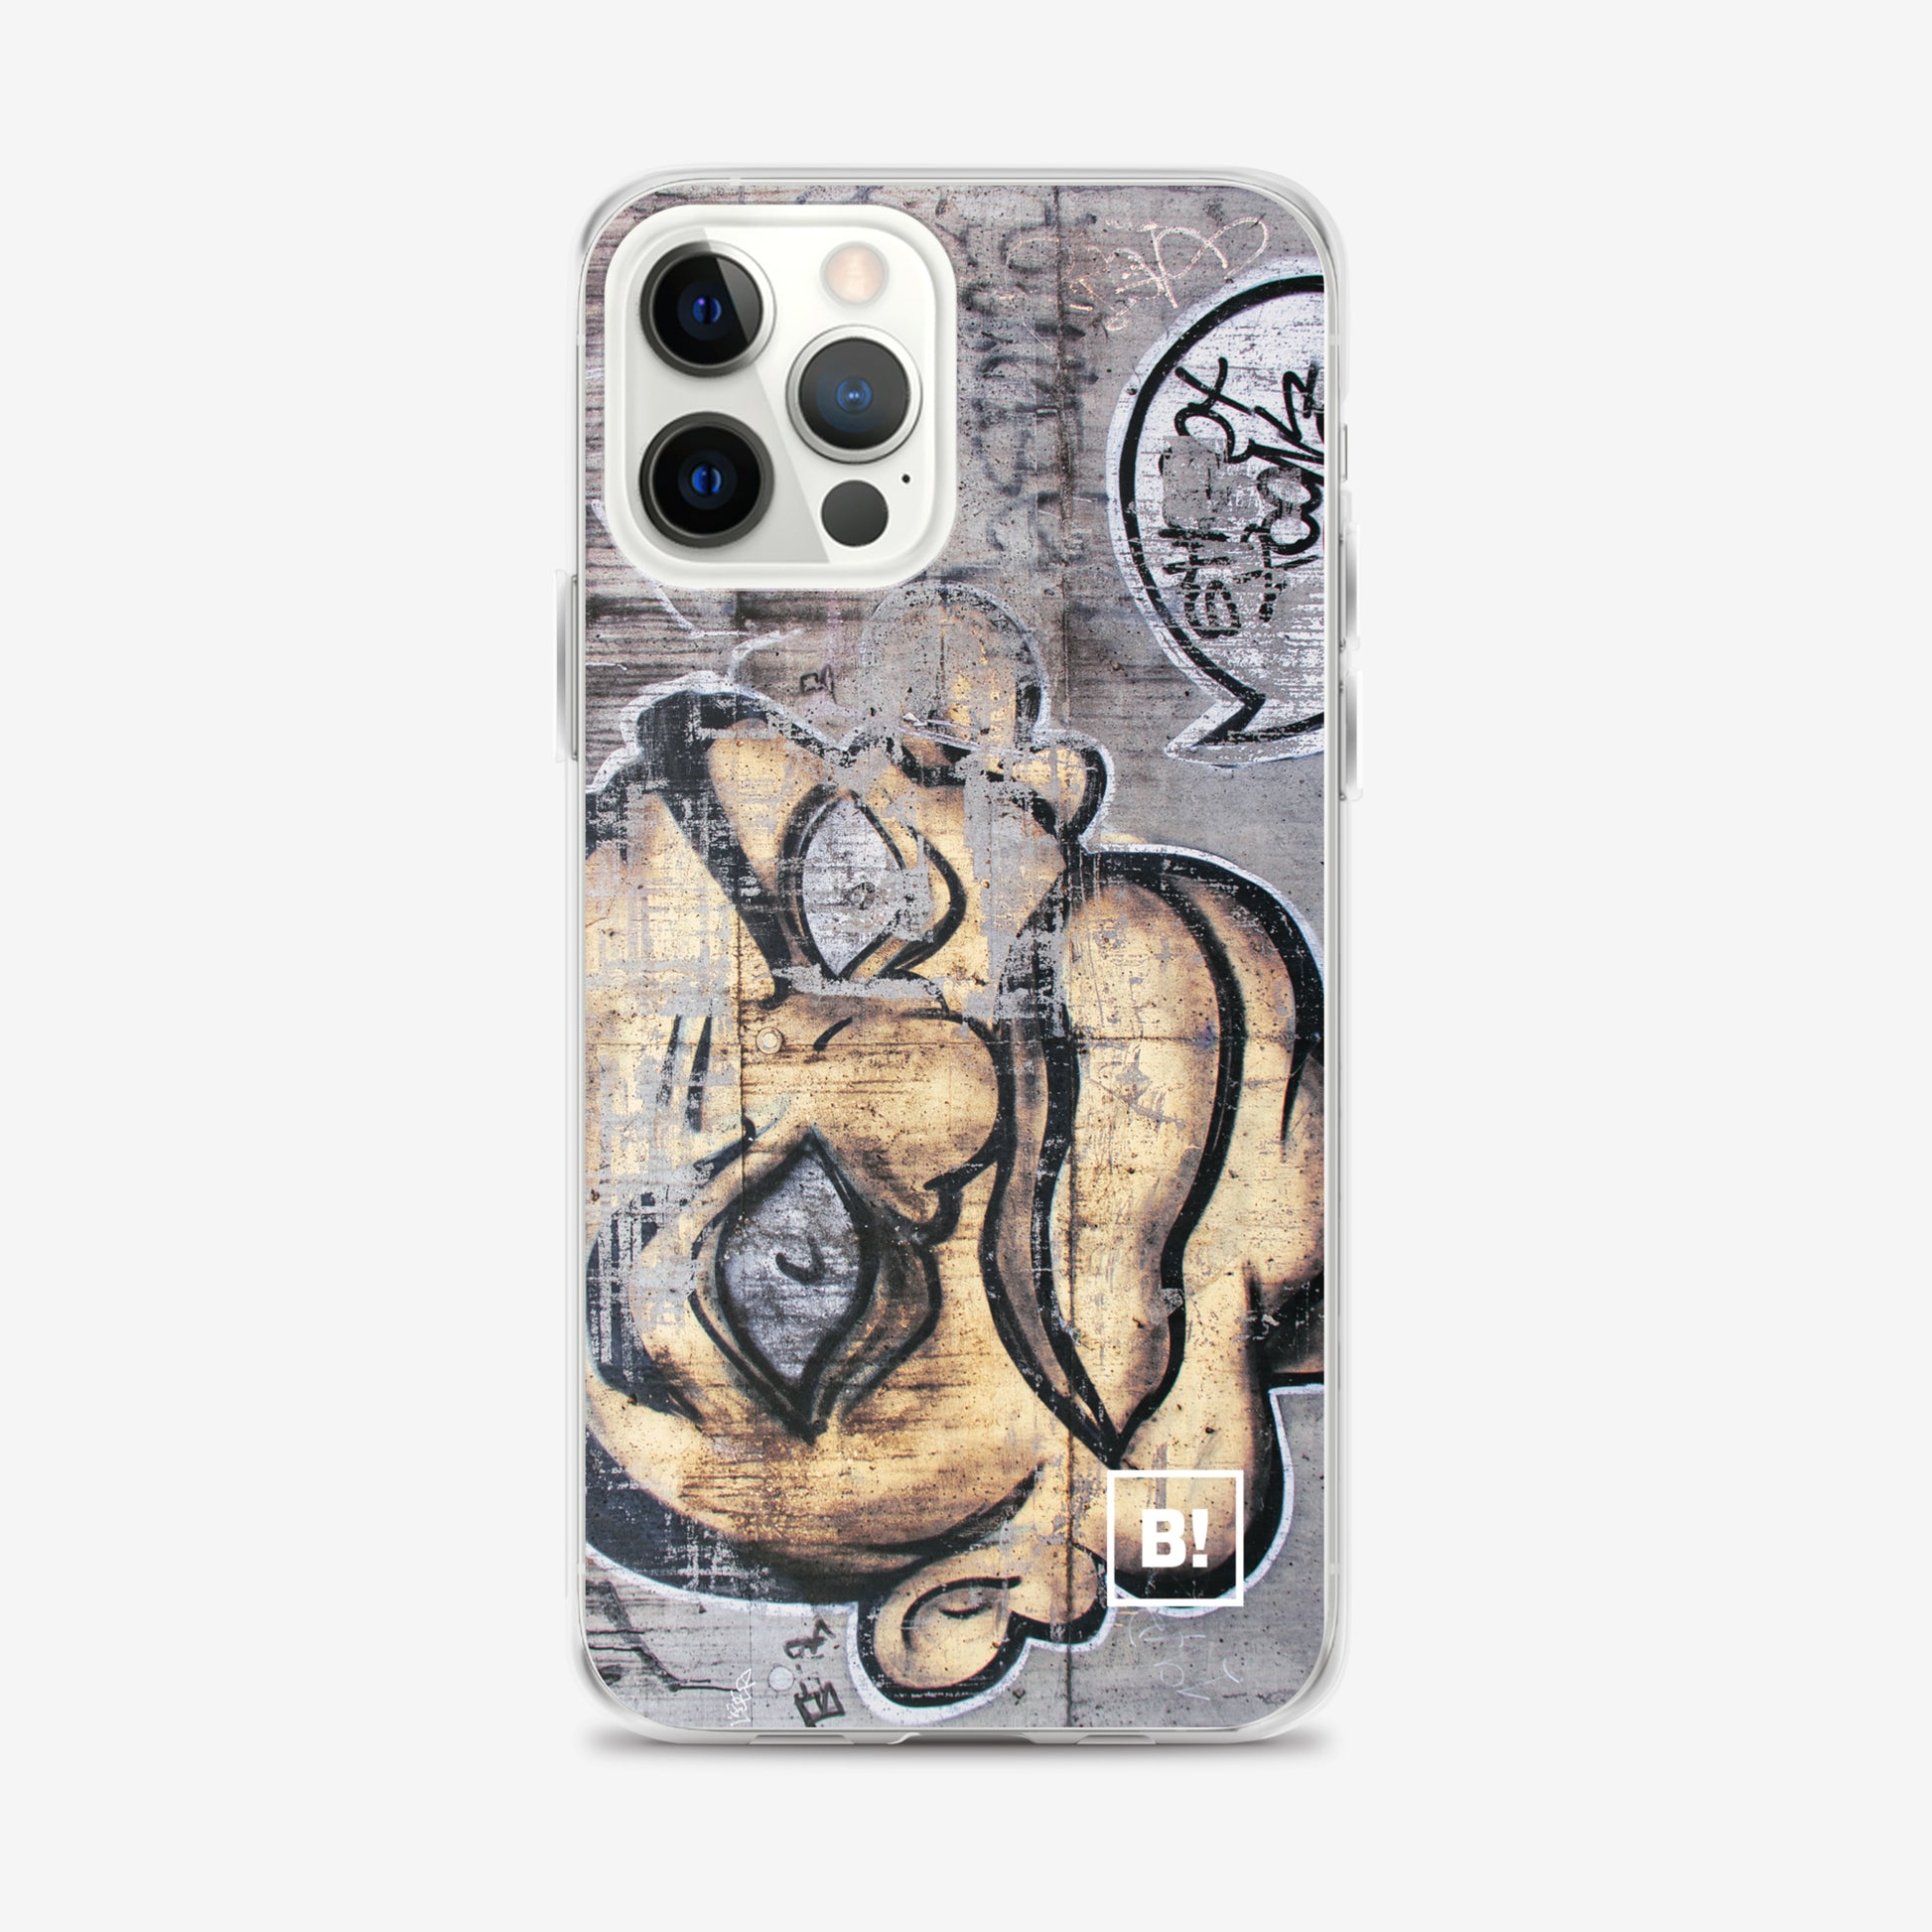 Binspired Shoot Urban Art iPhone 12 Pro Max Case Zurich